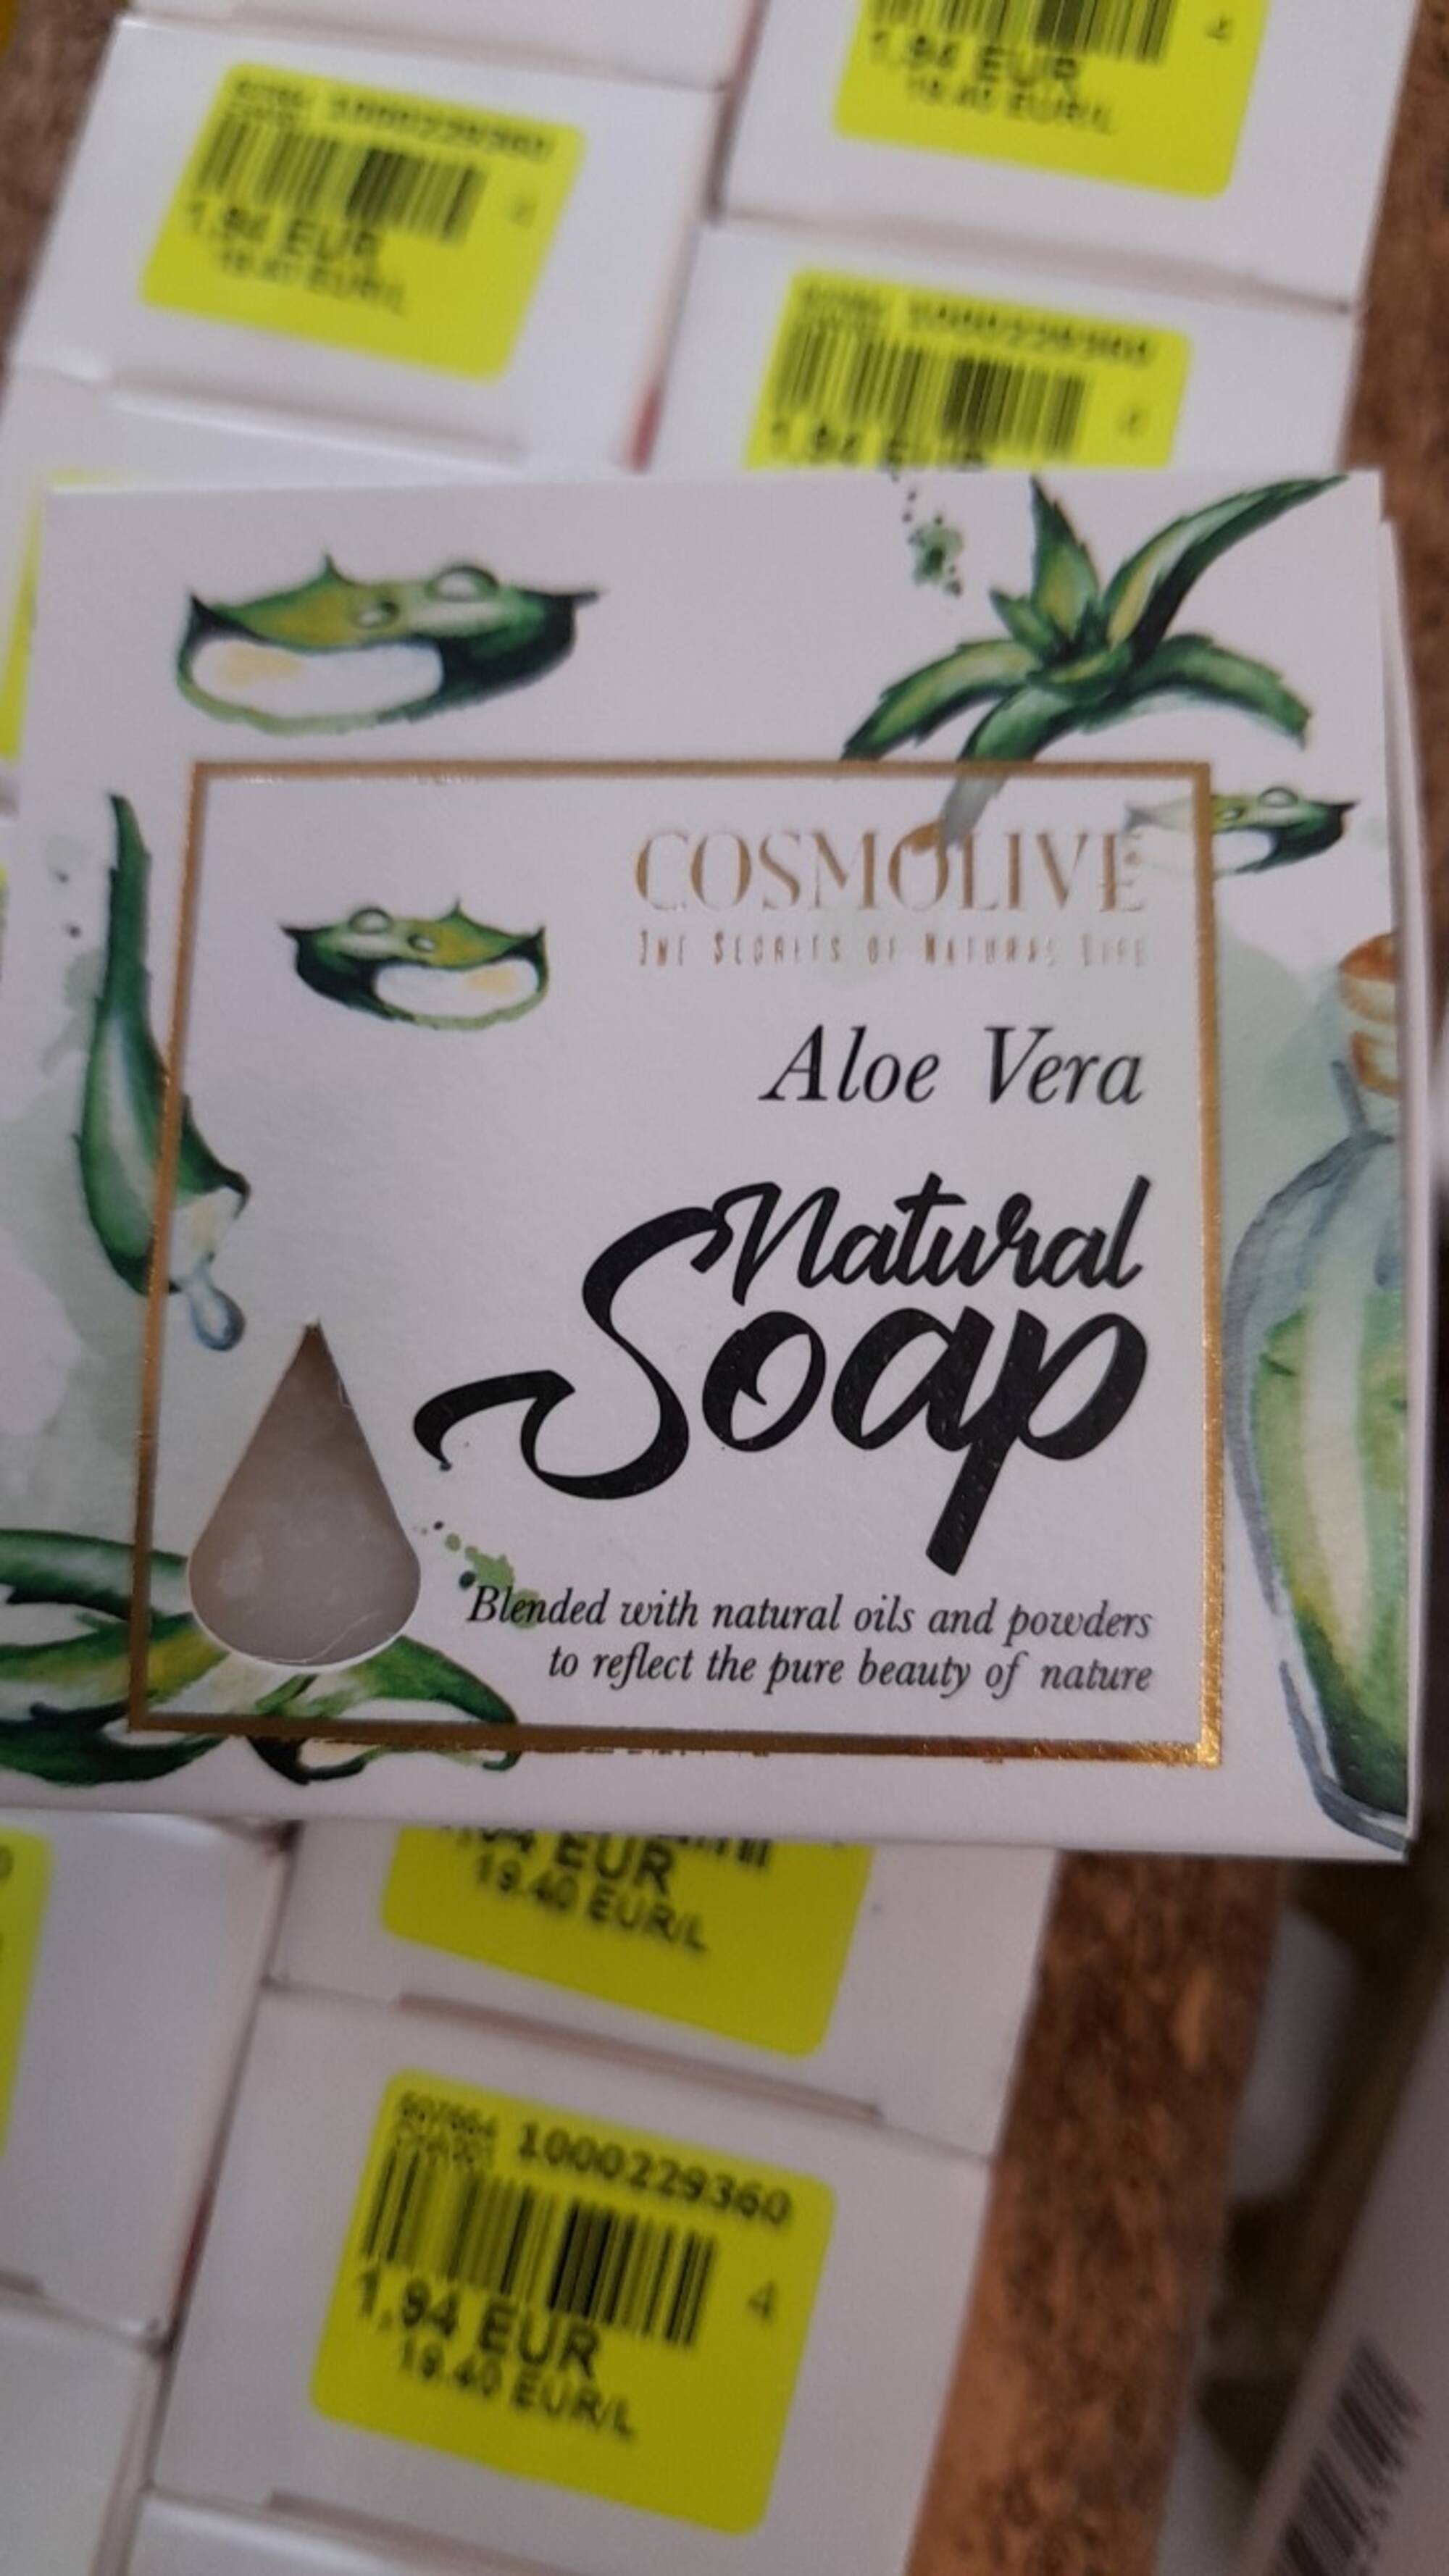 COSMOLIVE - Aloe Vera - Natural soap